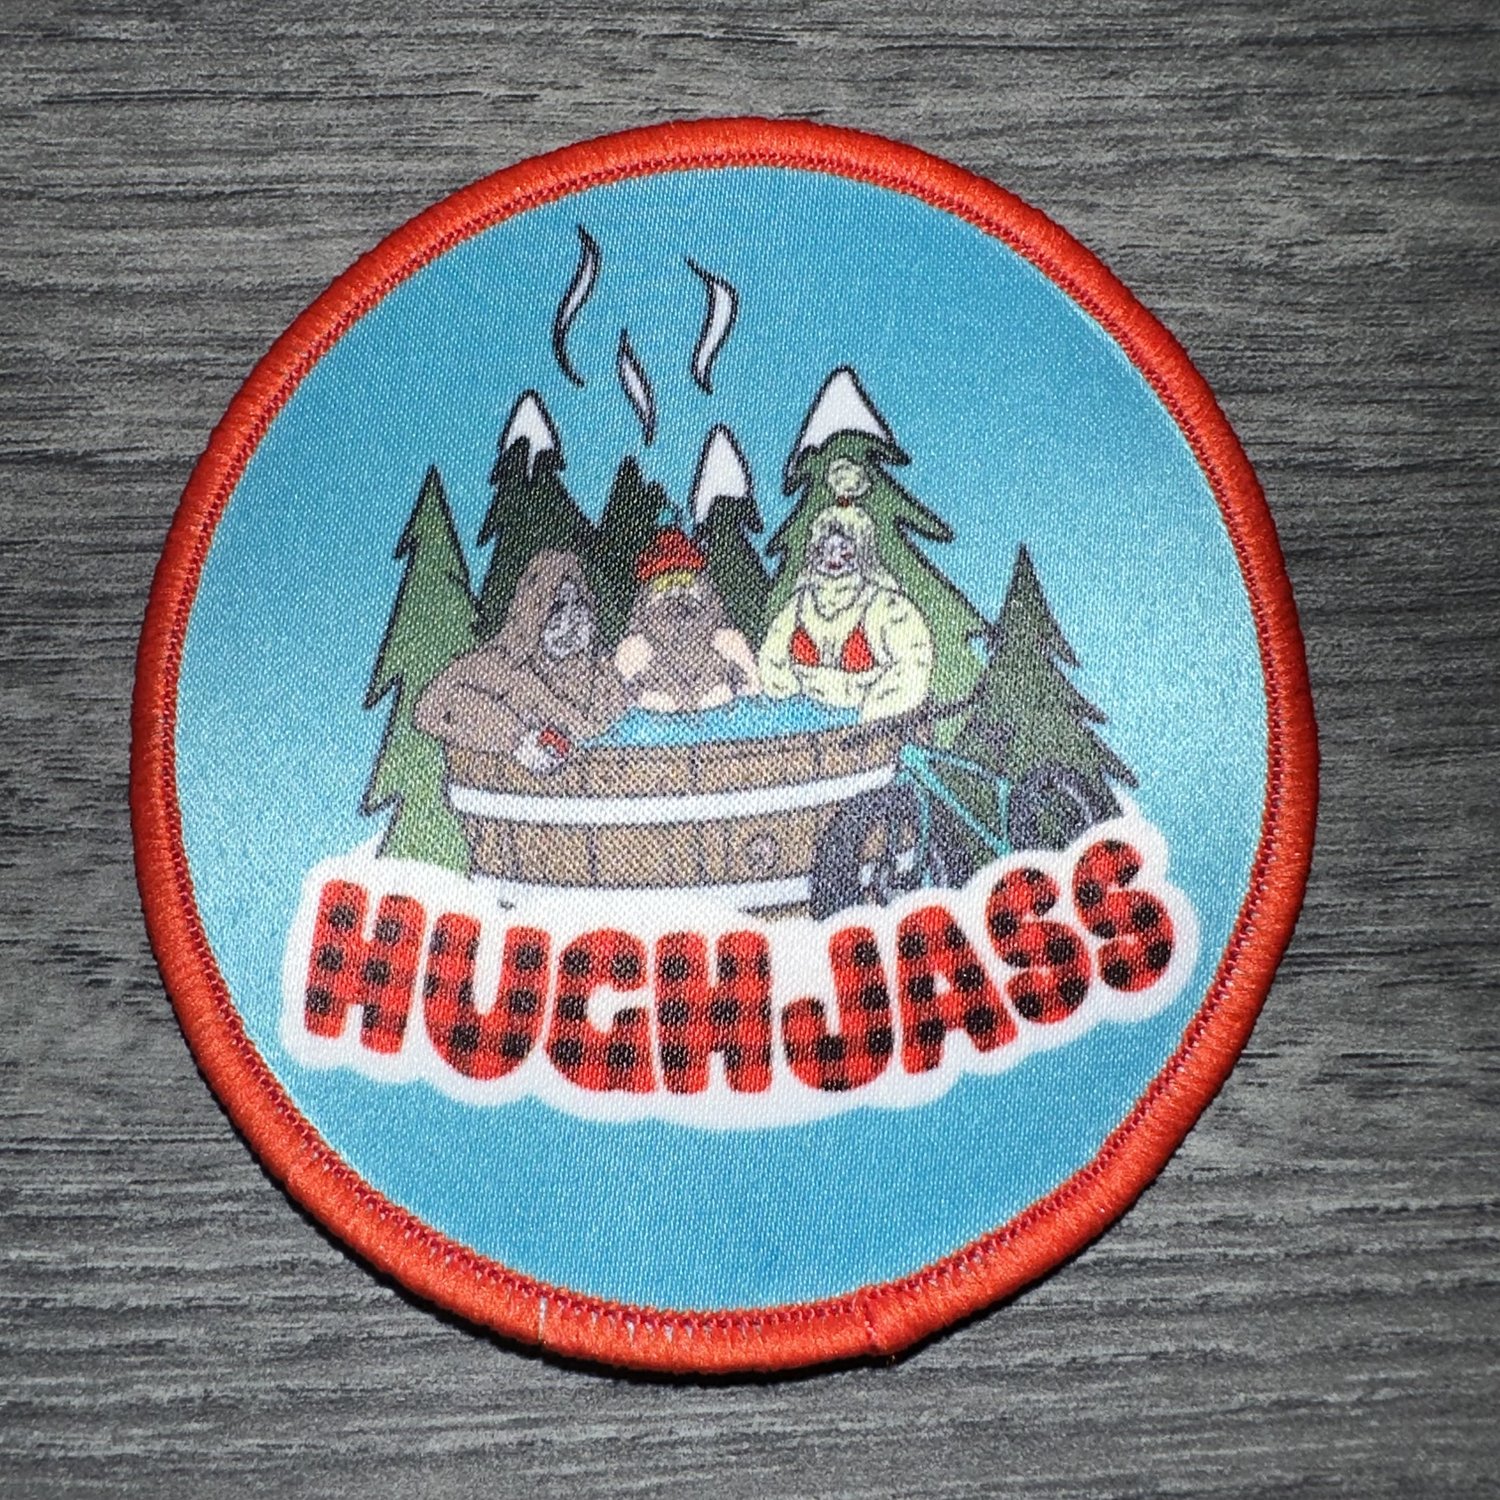 Hugh Jass Patches — Hugh Jass